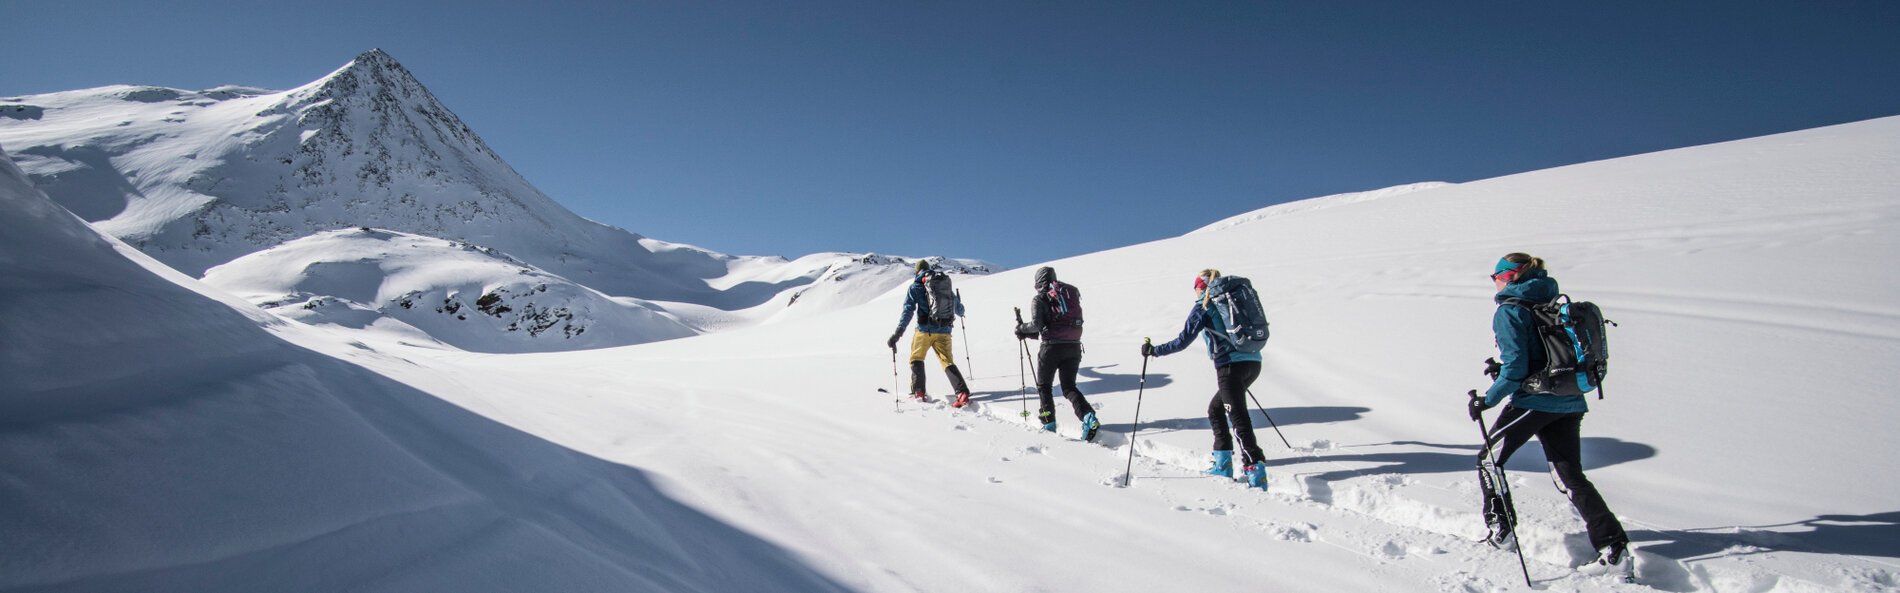 Eine vierköpfige, bunt gekleidete Skitourengruppe spurt im Pulverschnee in Richtung eines pyramidenförmigen Berges. © BergImBild, Christian Riepler